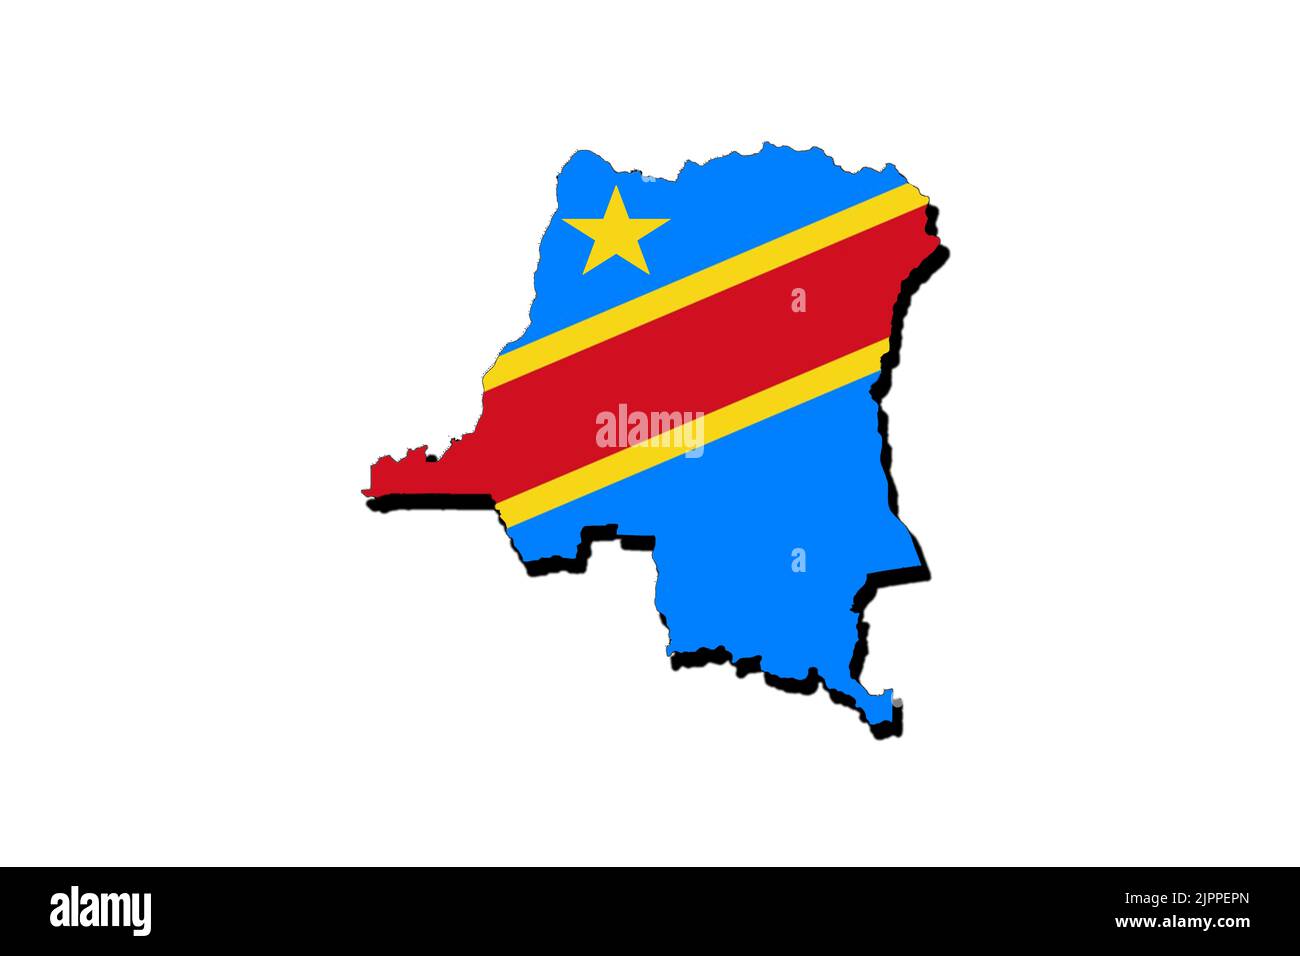 République démocratique du congo - Icônes drapeaux gratuites